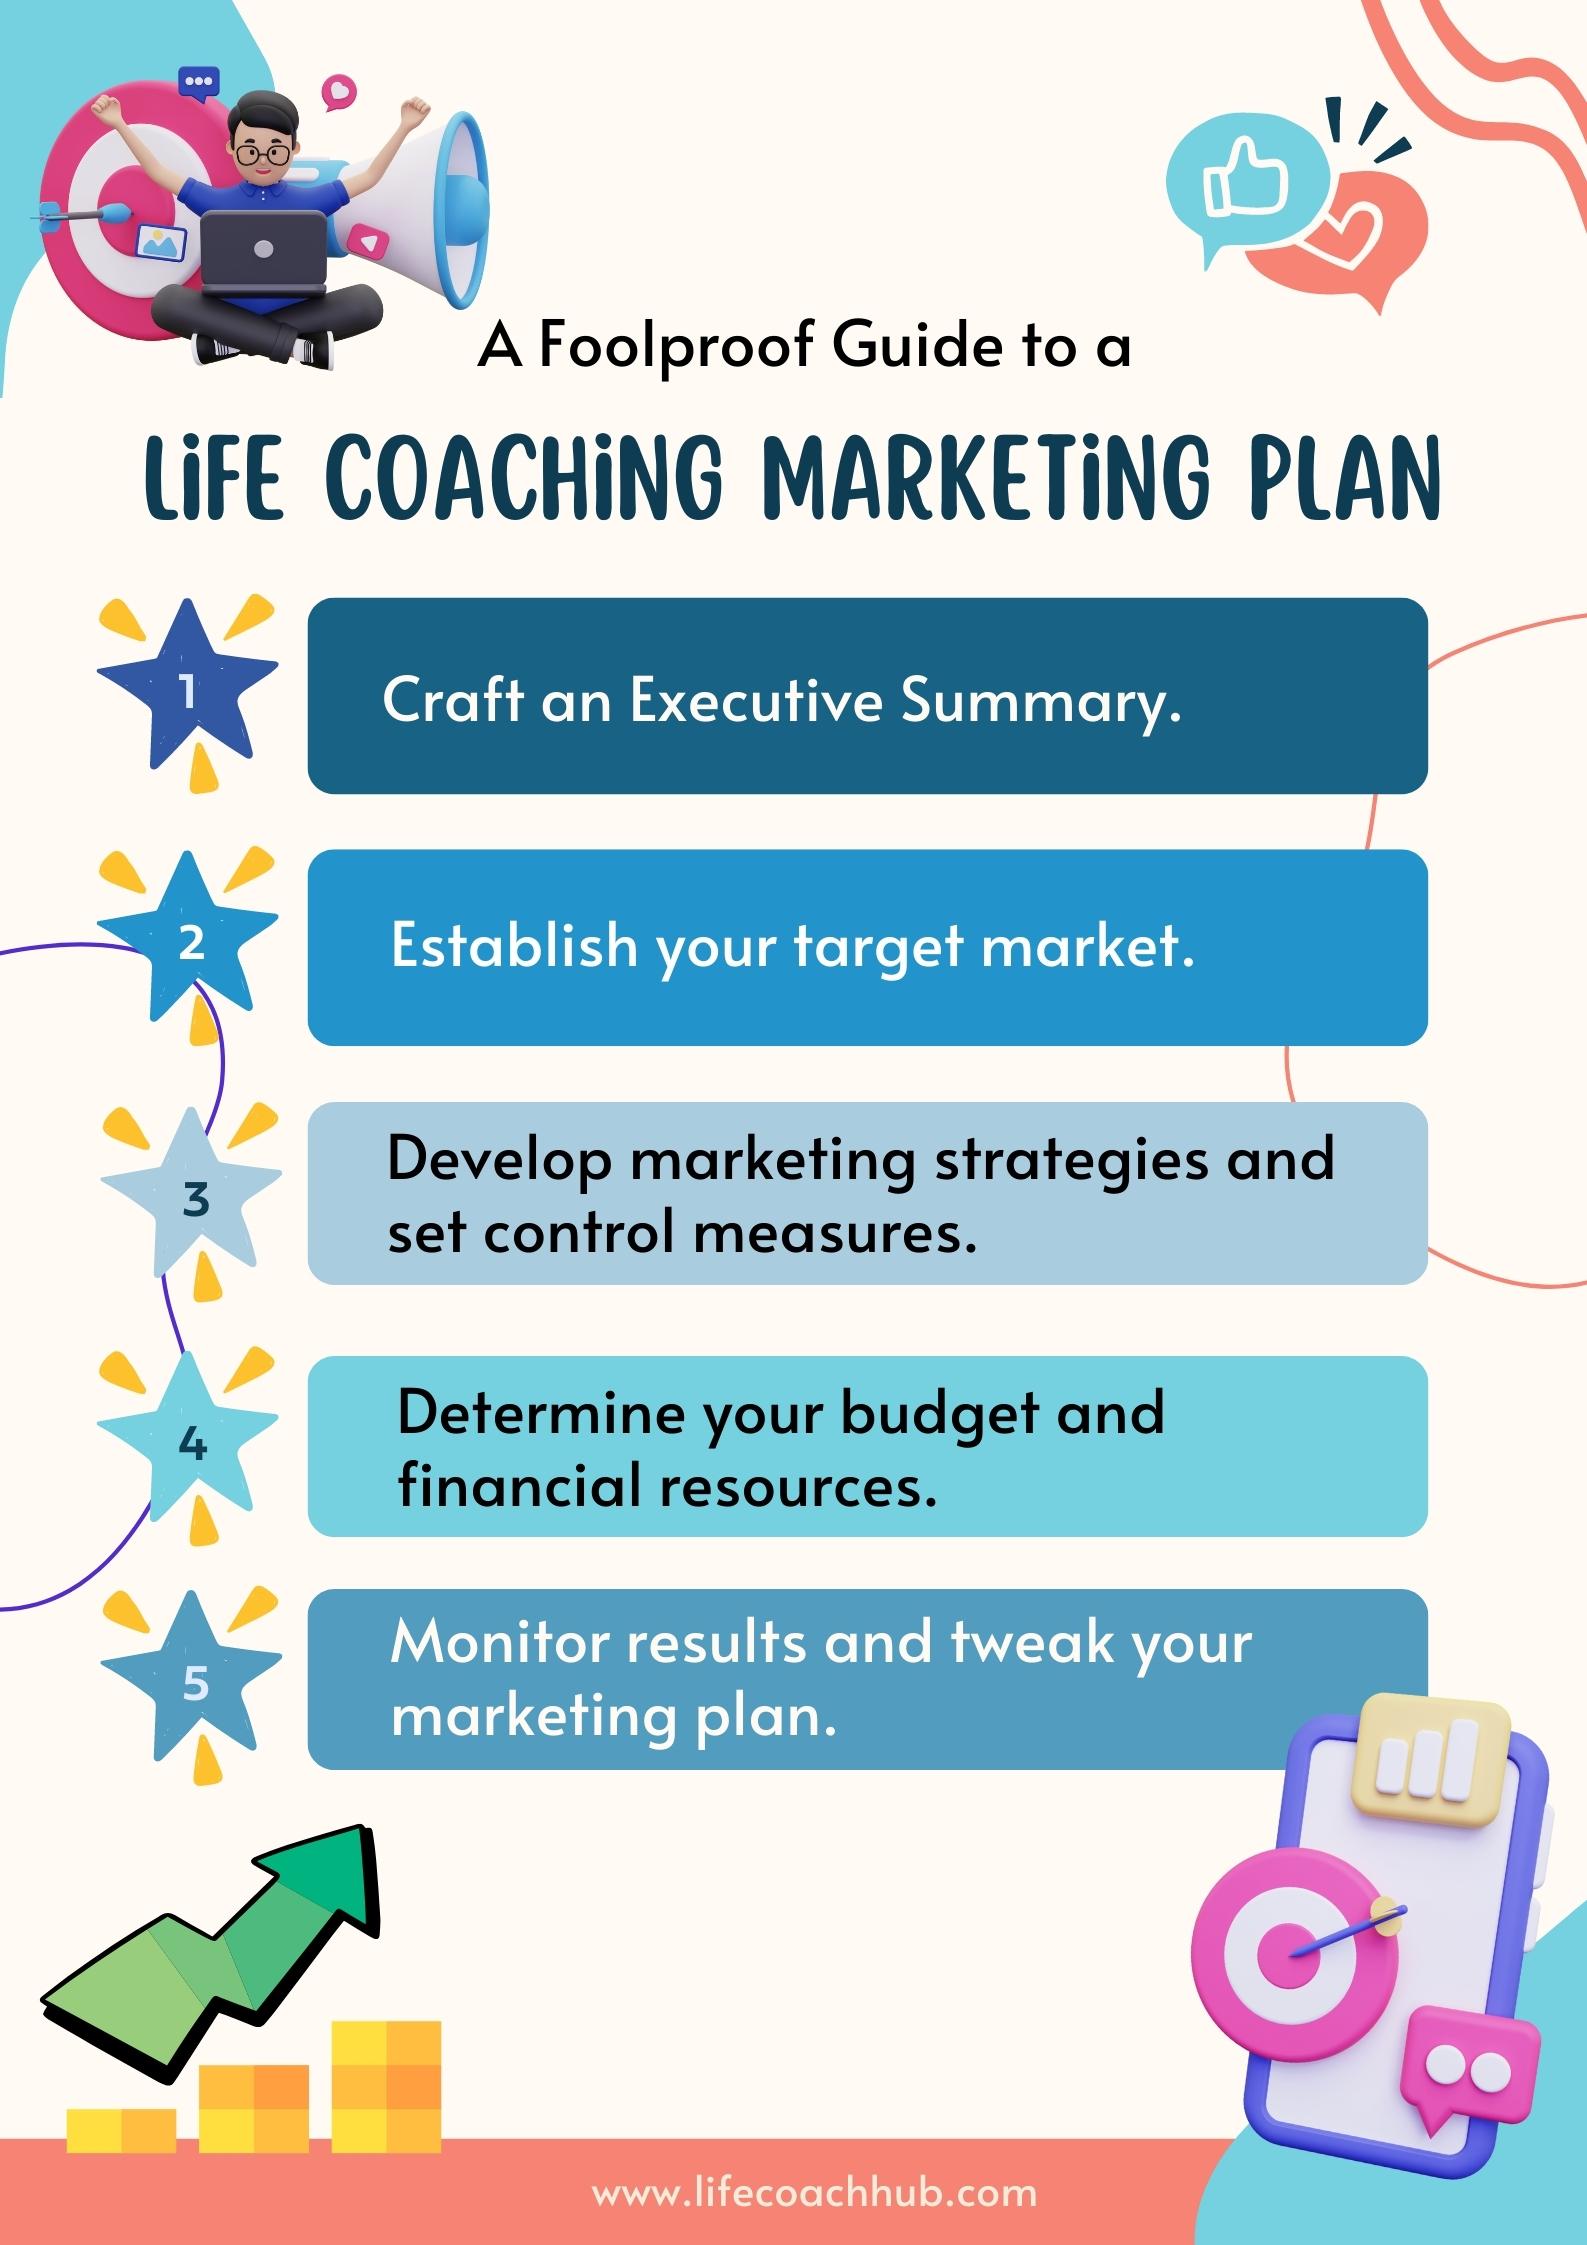 Life coaching marketing plan guide